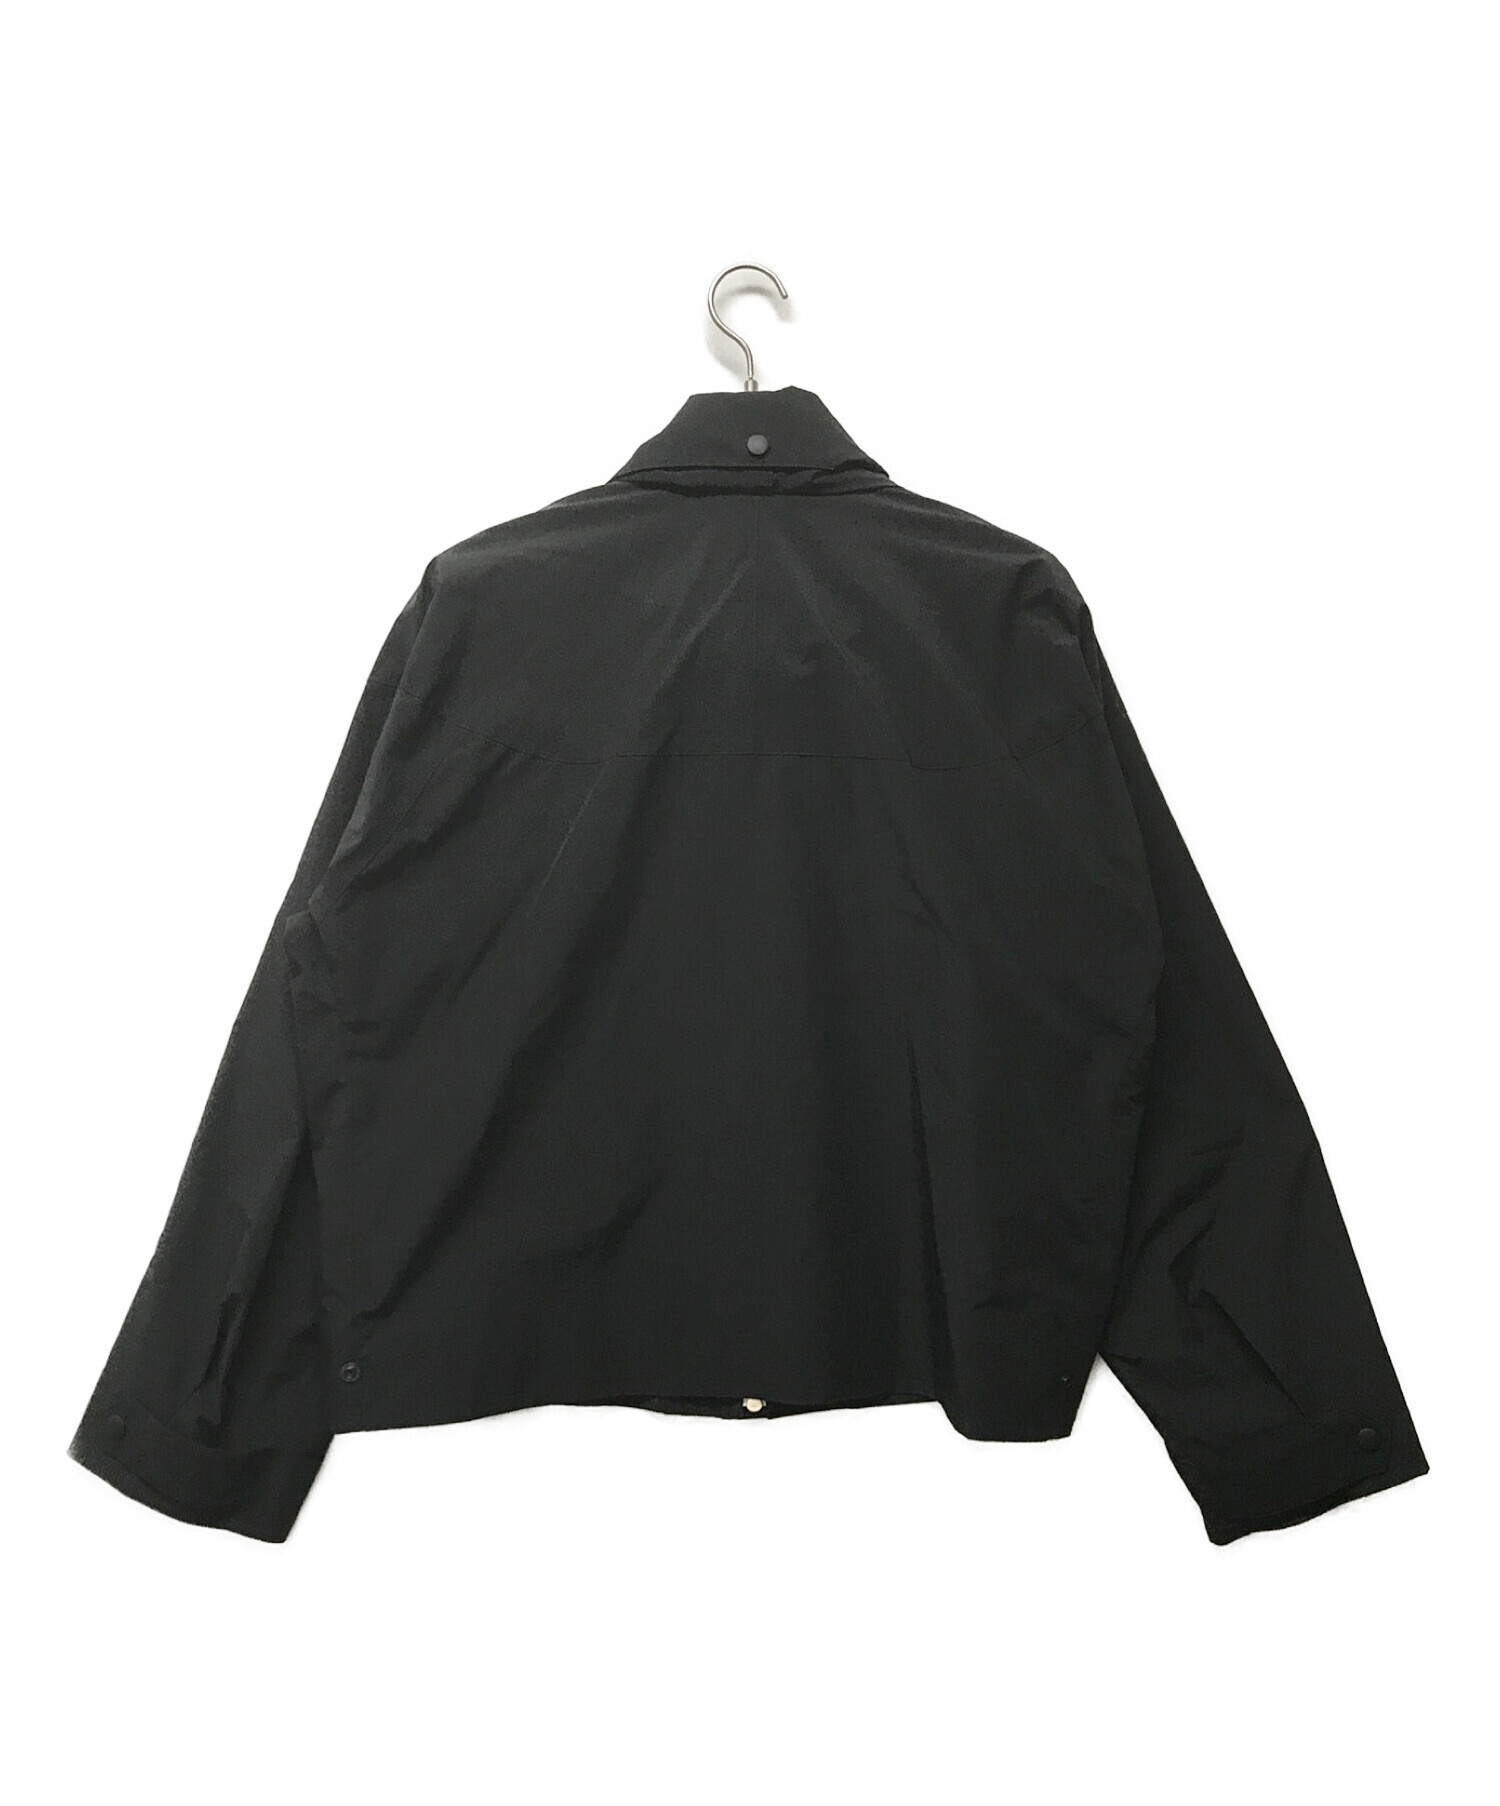 【高品質】DIGAWEL MOUNTAIN PARKA BLACK size 3 ジャケット・アウター